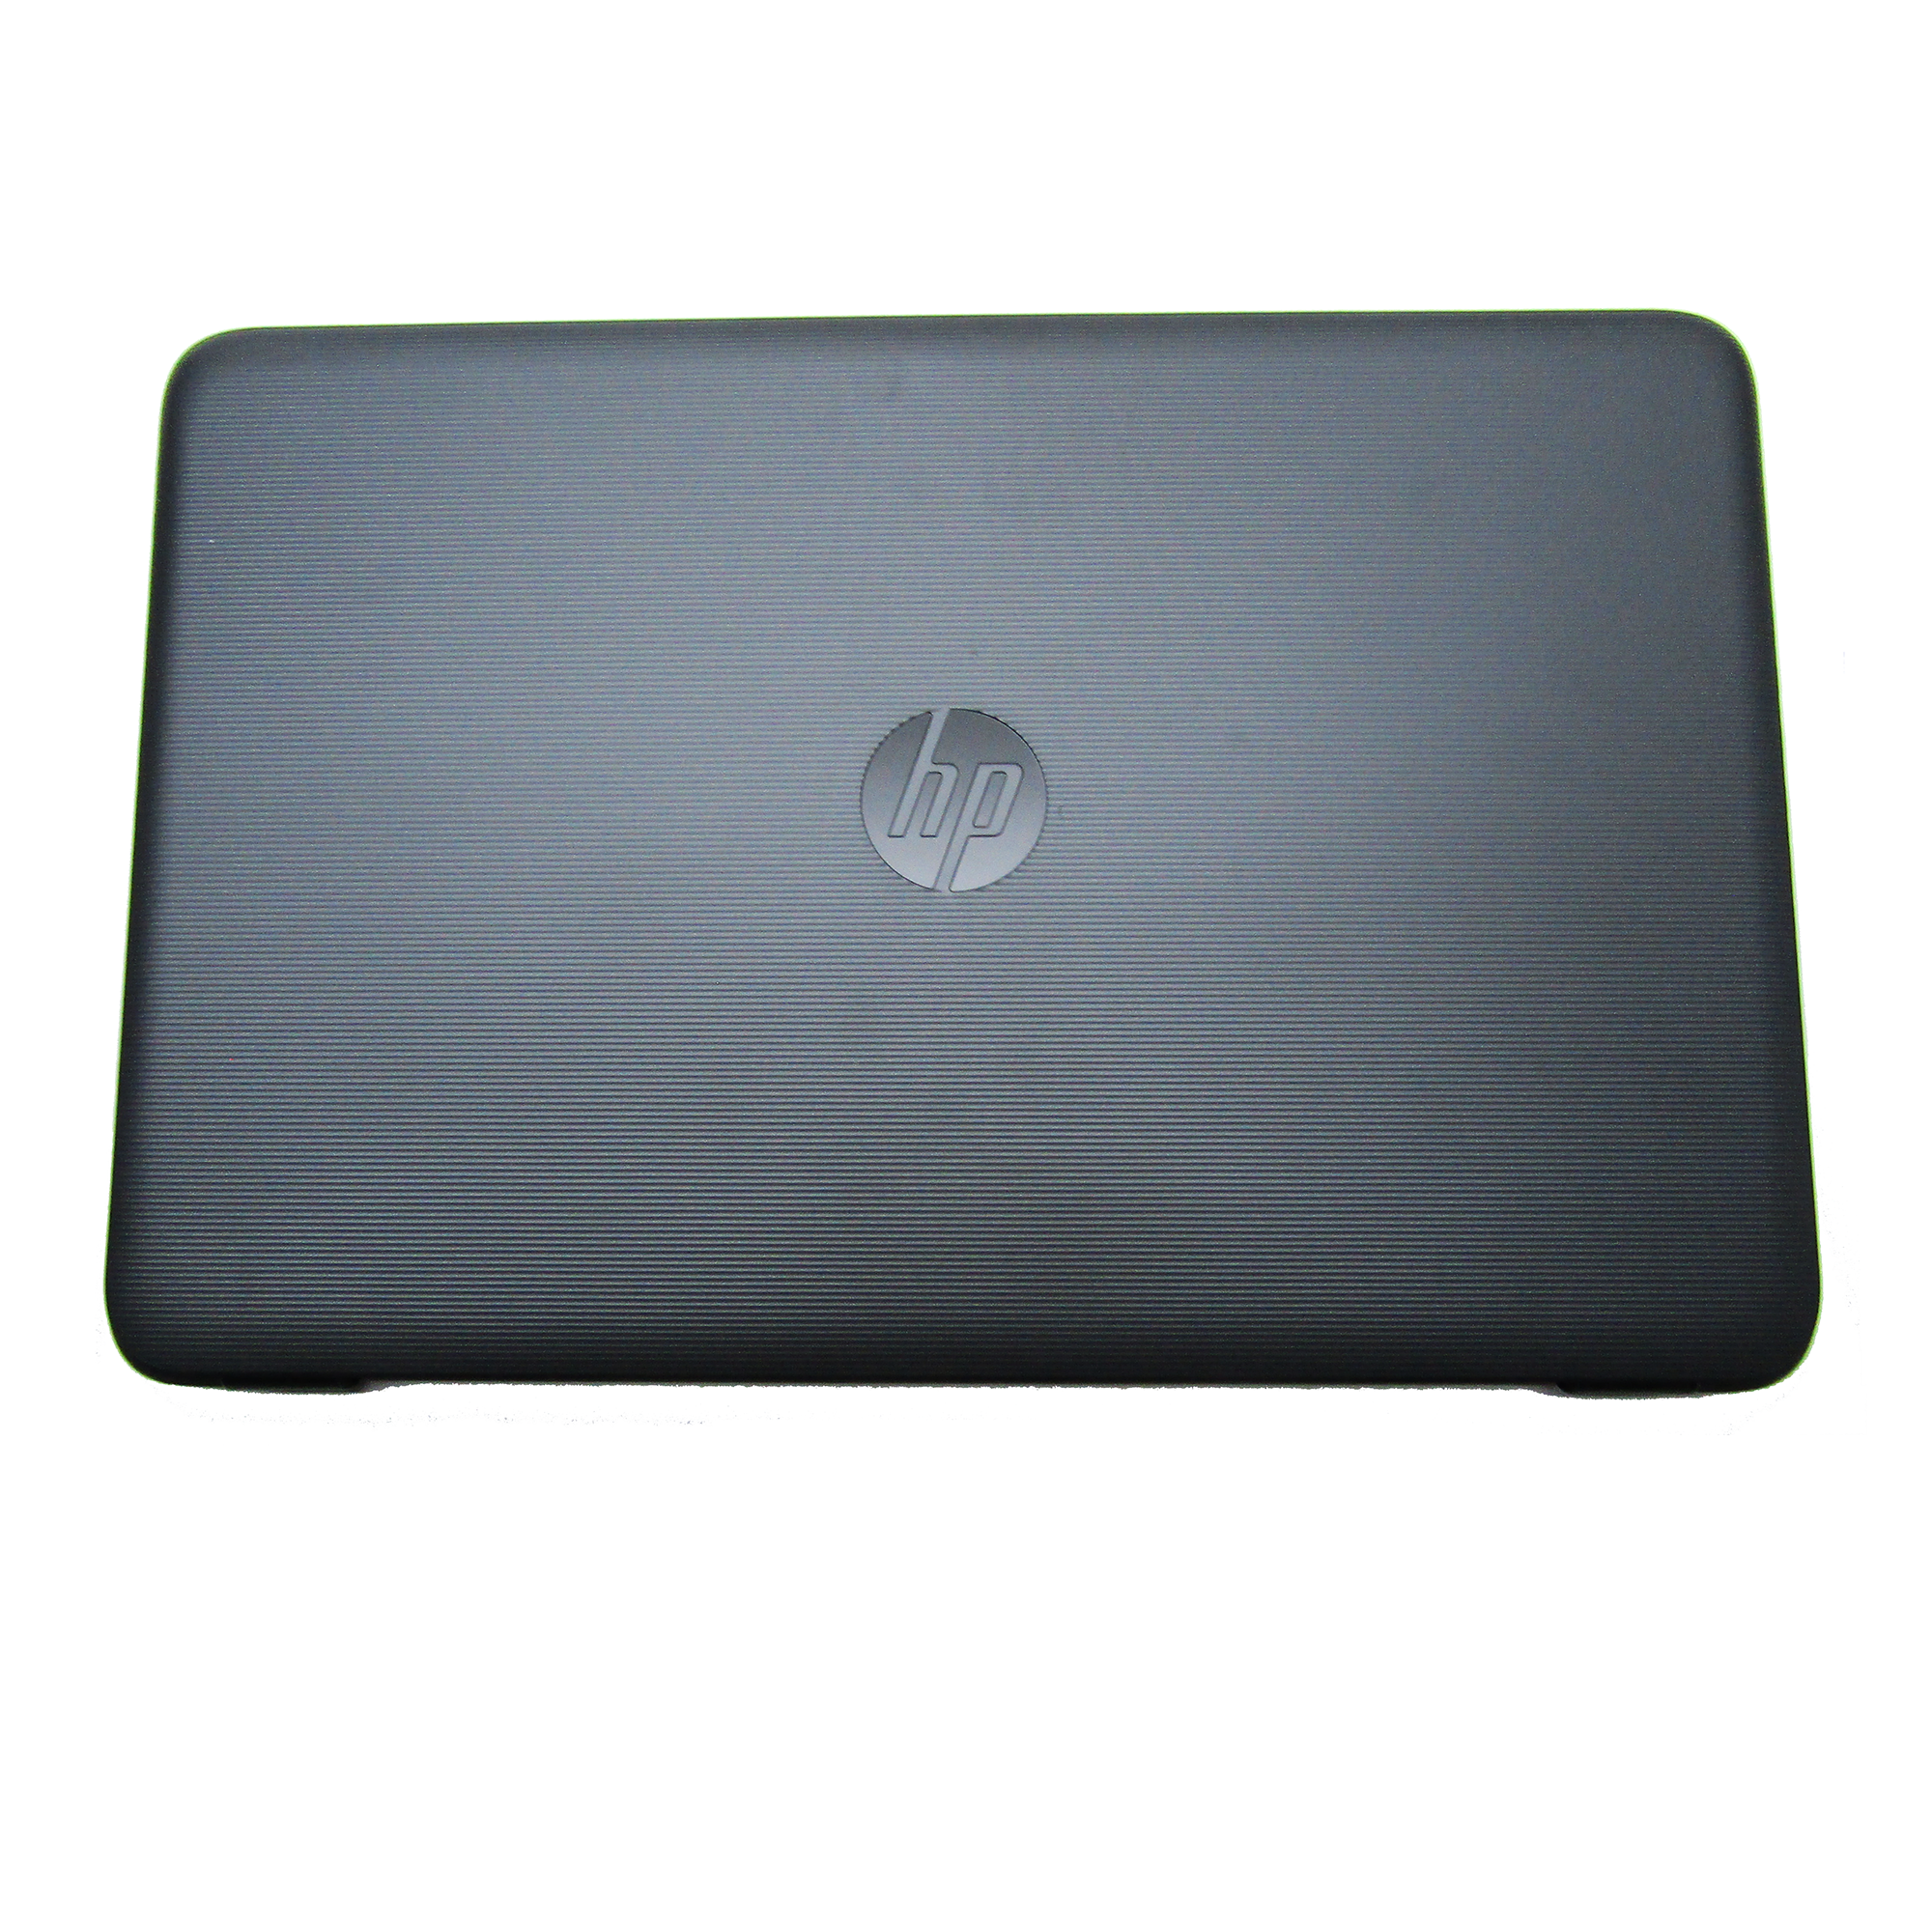 New Laptop Grey Top Lid Cover For HP Pavilion 15-AY |15-BA |15-AF | 250 255 G4 |250 255 G5. Part Number: 859511-001